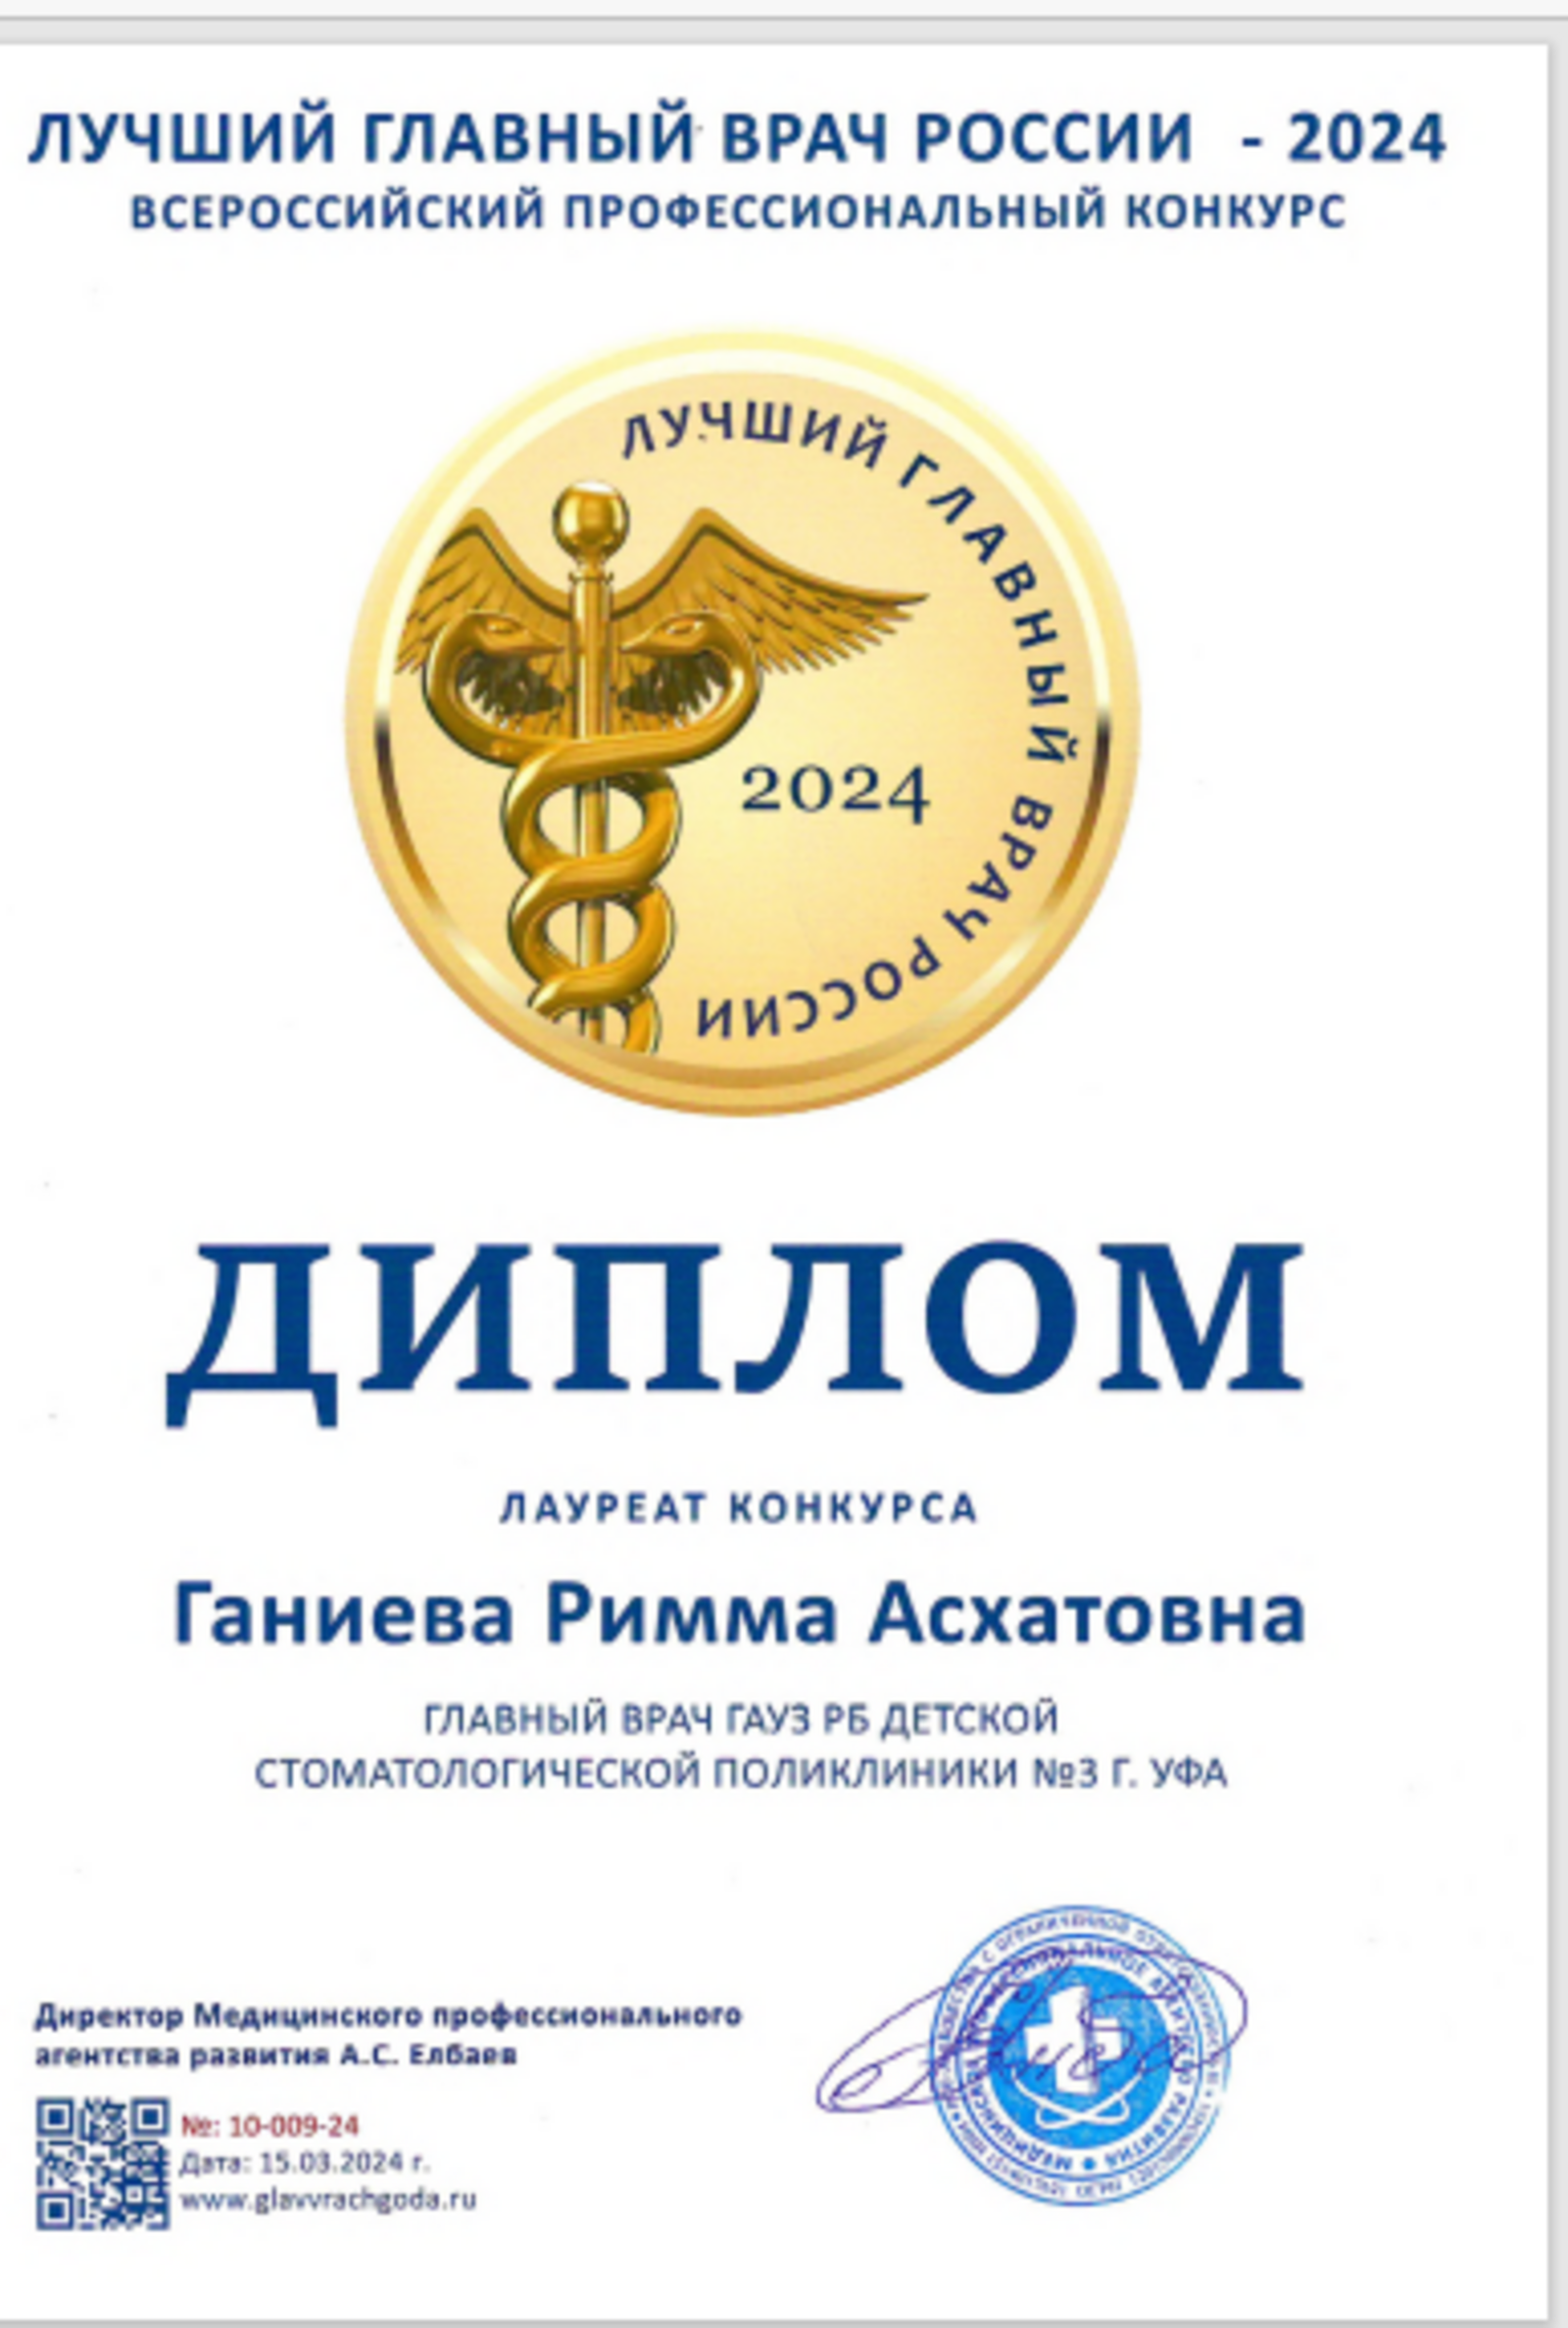 Руководитель детской стоматологии № 3 Уфы стала лауреатом конкурса «Лучший главврач России»